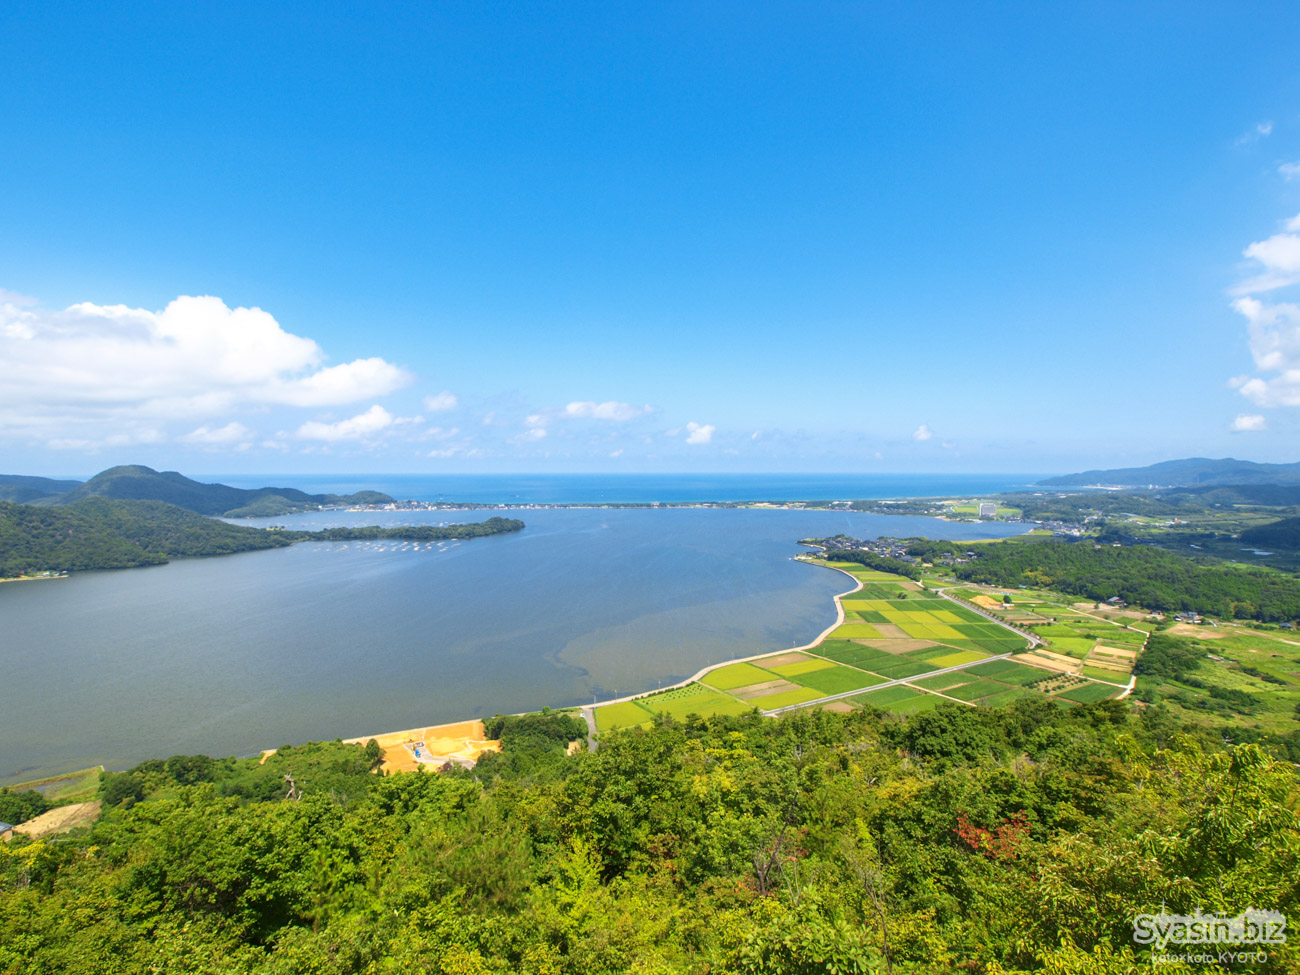 丹後・かぶと山展望台 – 久美浜湾を一望する大絶景